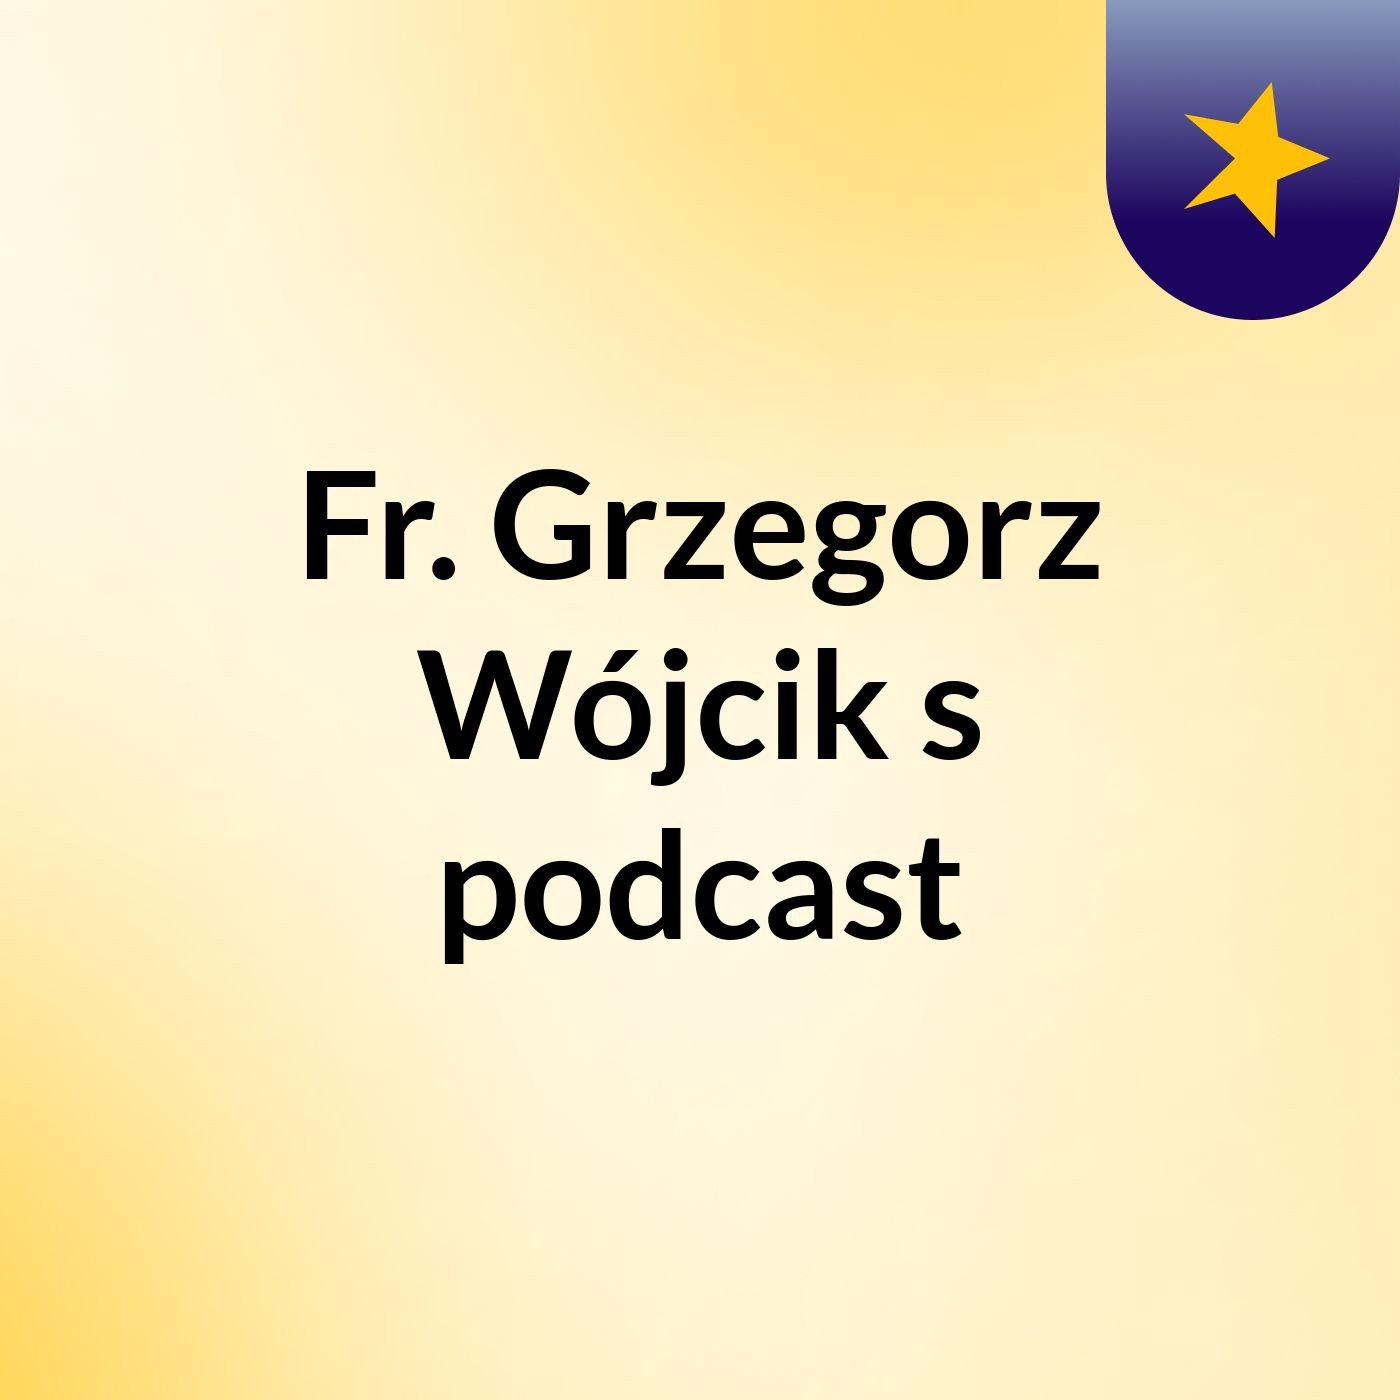 Fr. Grzegorz Wójcik's podcast